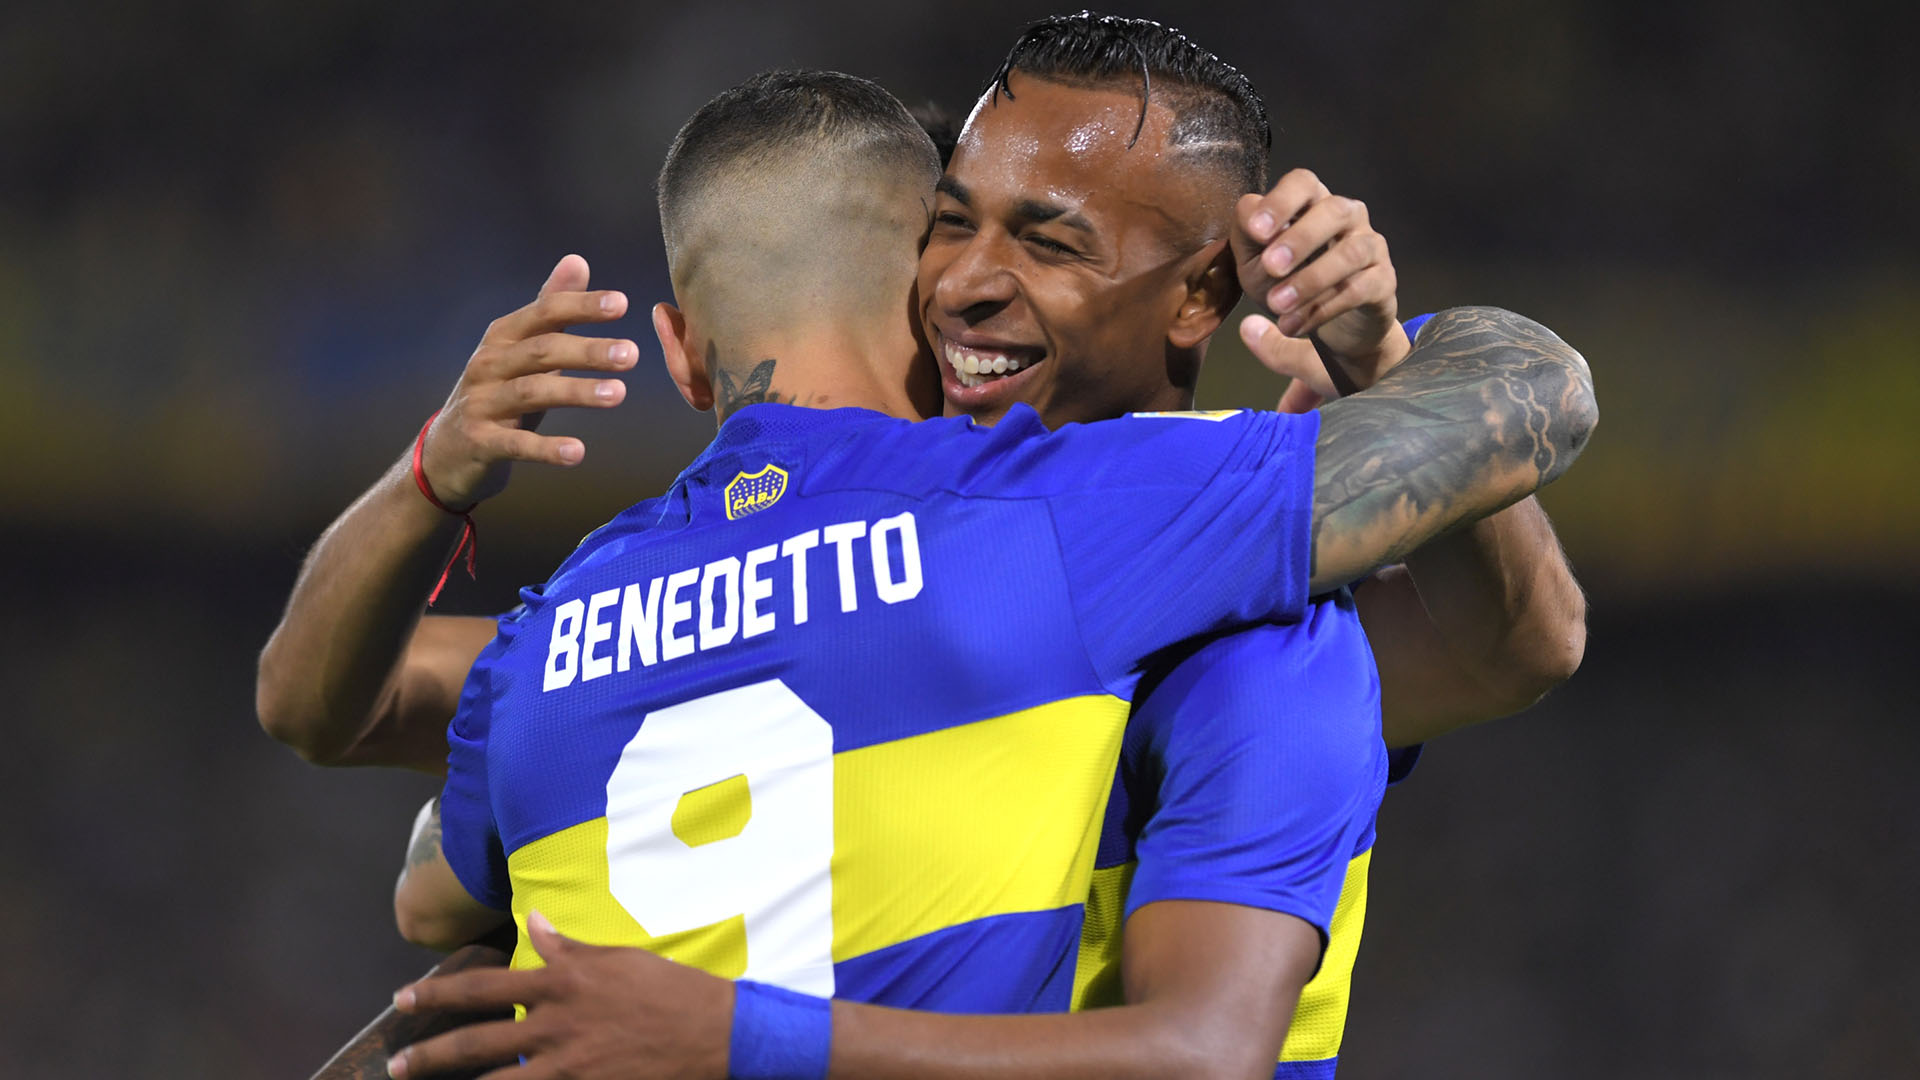 El abrazo entre Benedetto y Villa cuando Boca dominaba. Luego, bajó su nivel (Telam)